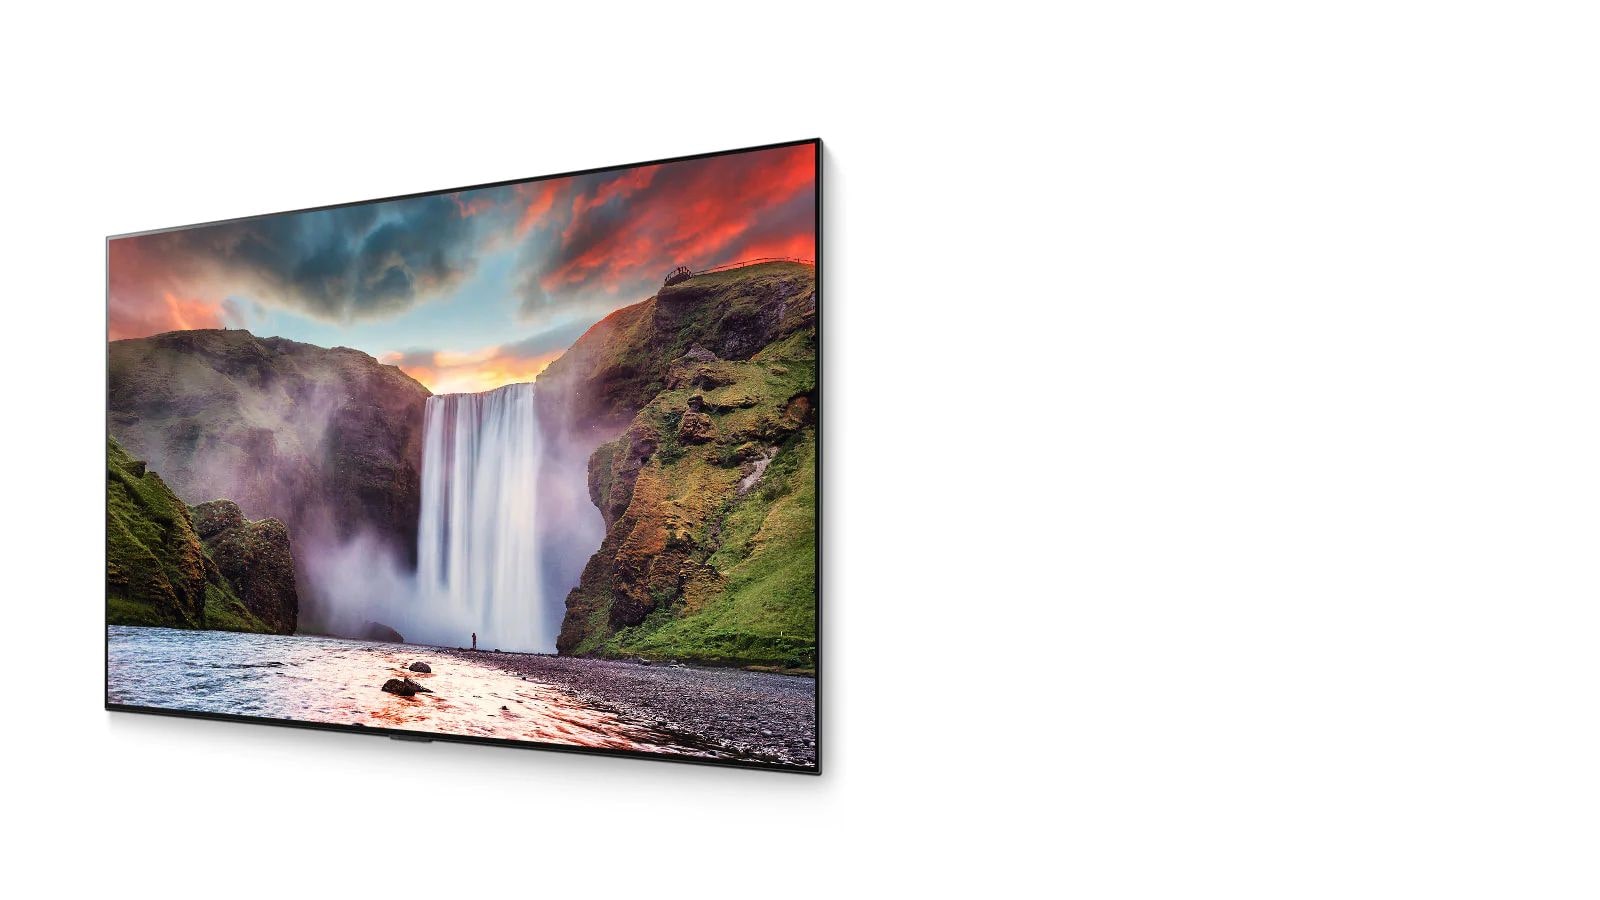 Az OLED TV-n egy gyönyörű tájkép jelenik meg egy lenyűgöző vízeséssel (videó megtekintése)